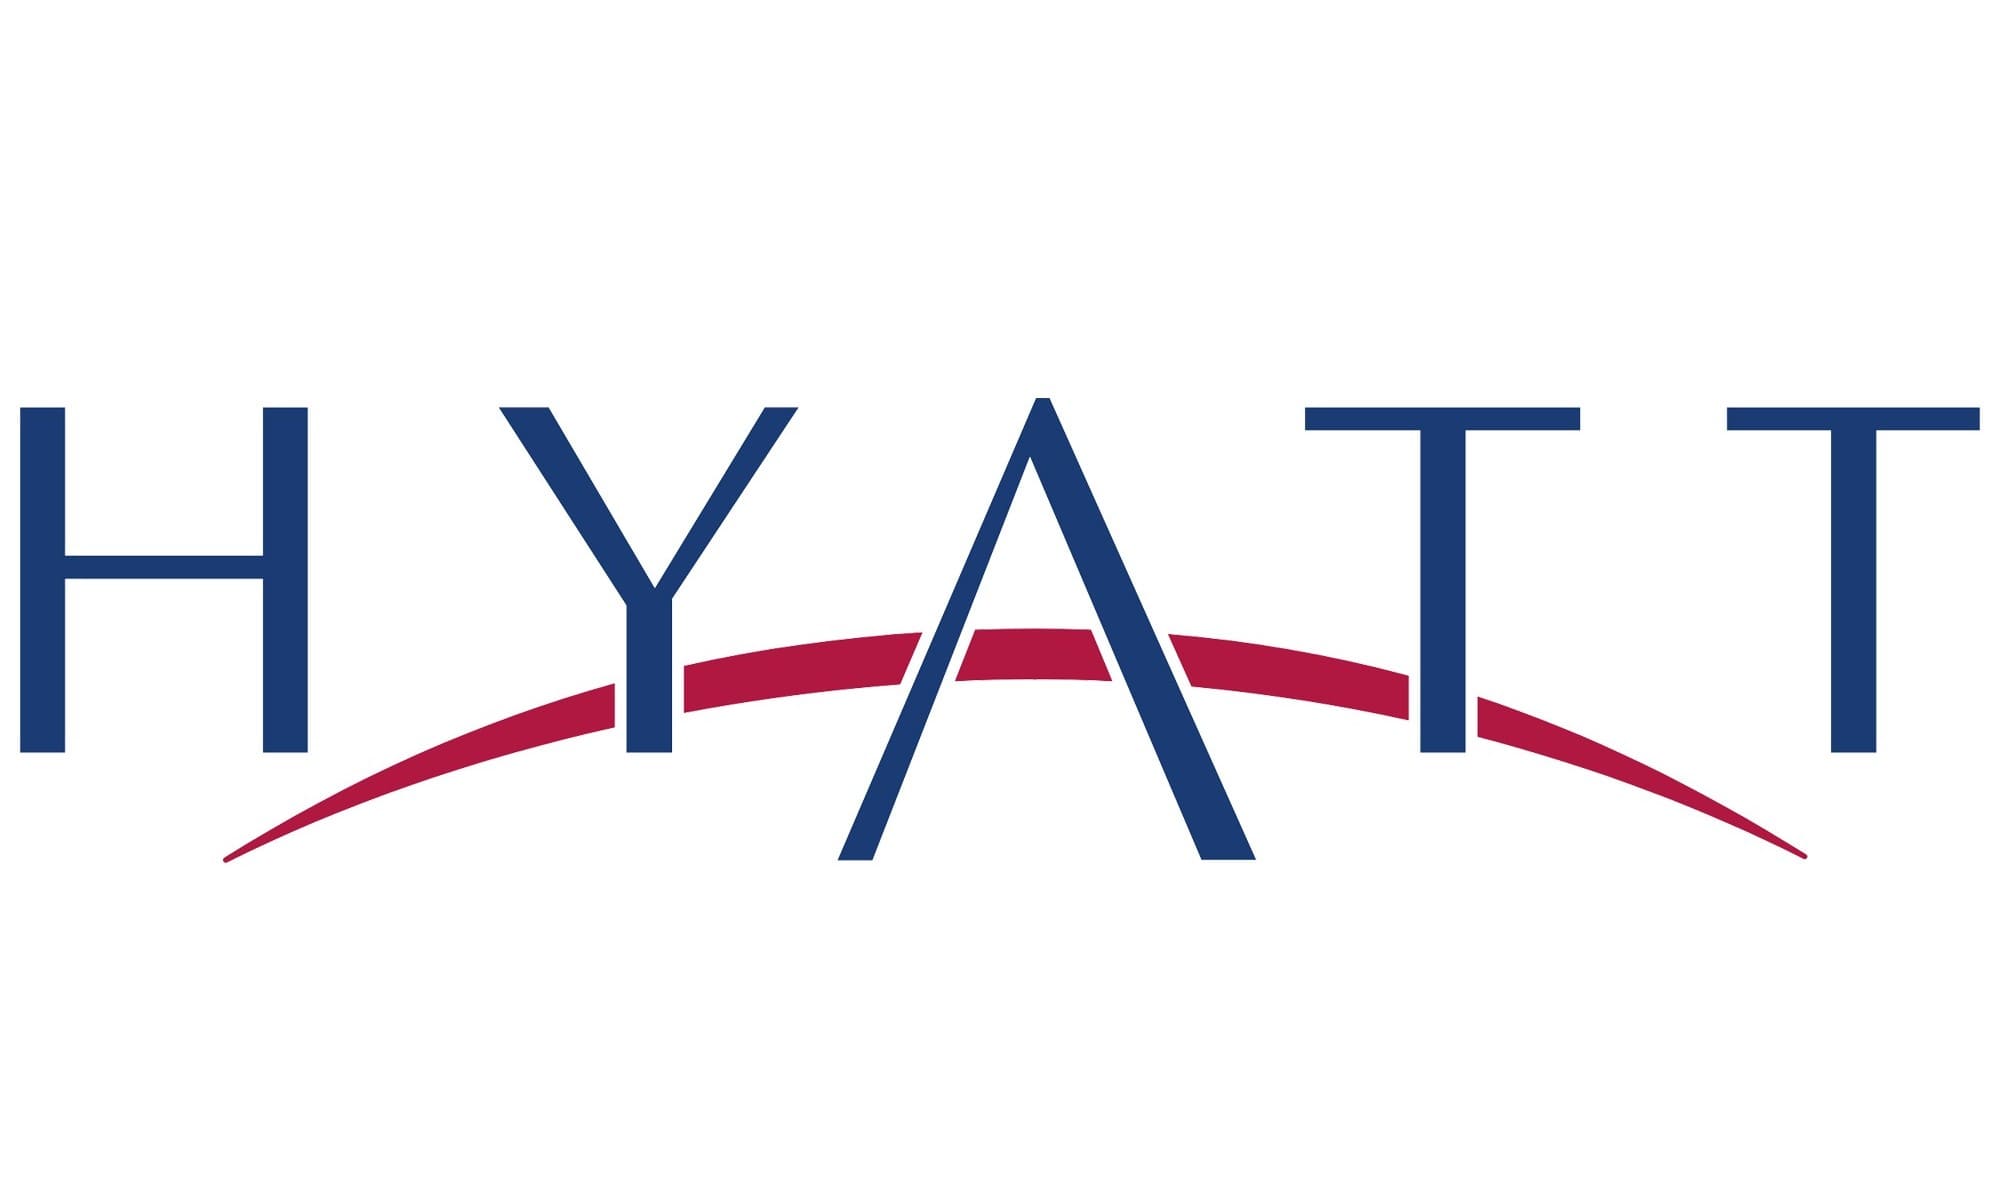 grand hyatt logo